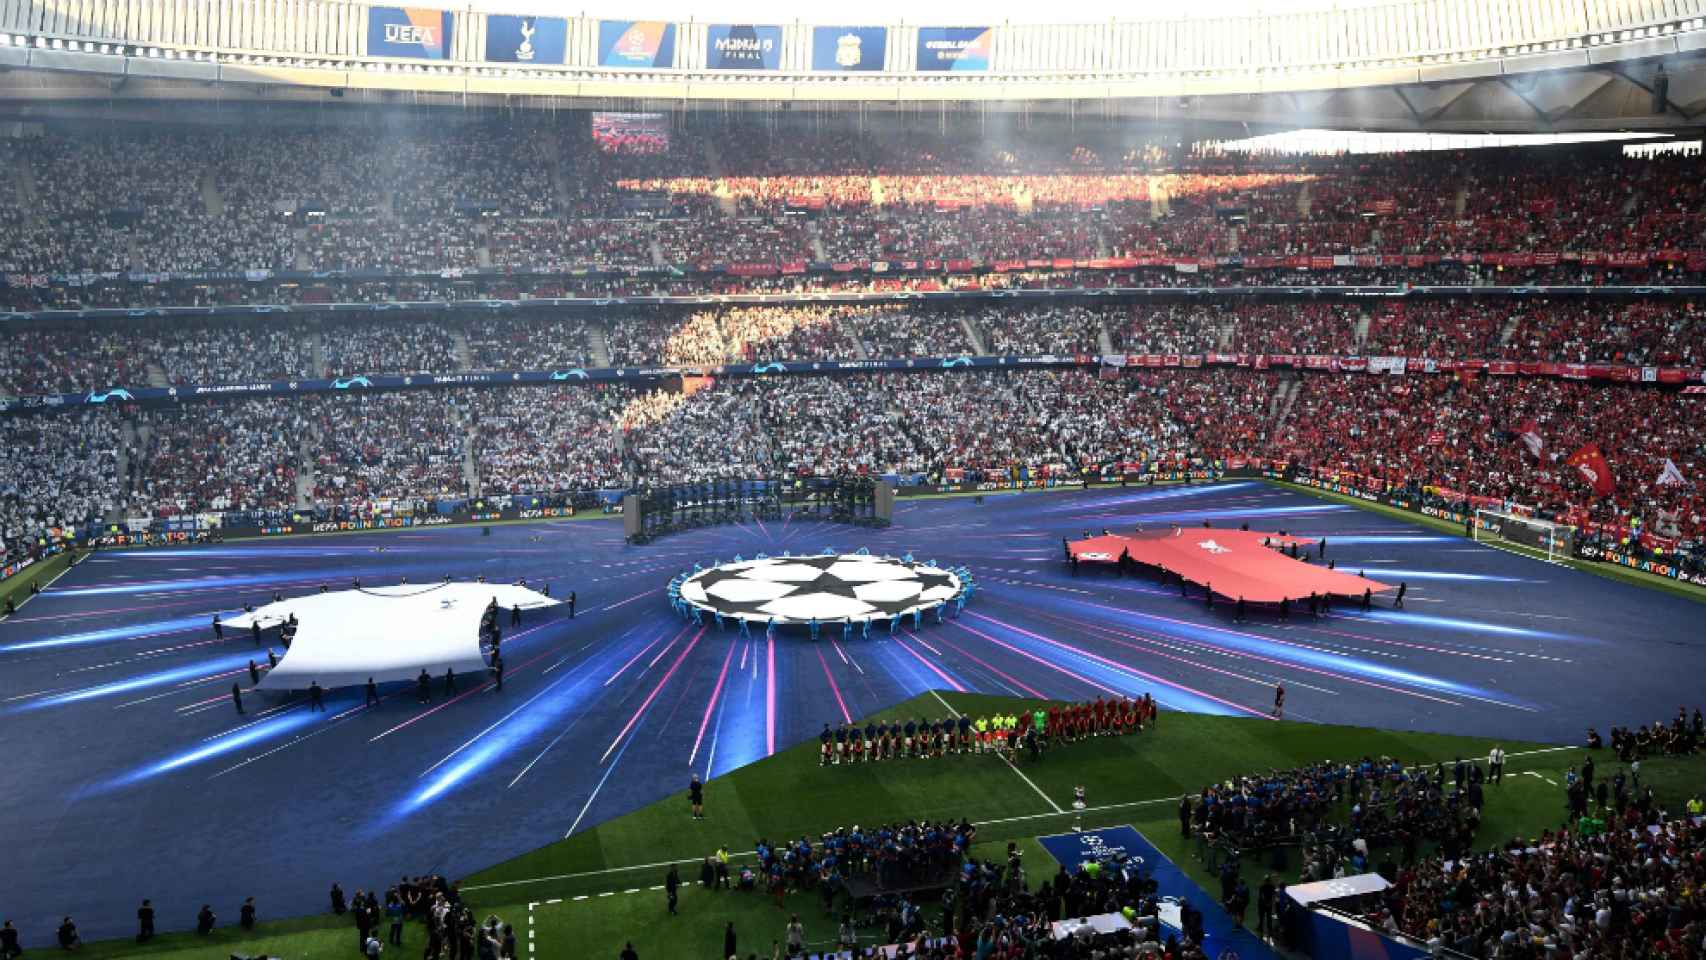 Así estaba el Wanda Metropolitano antes de empezar la final de Champions League